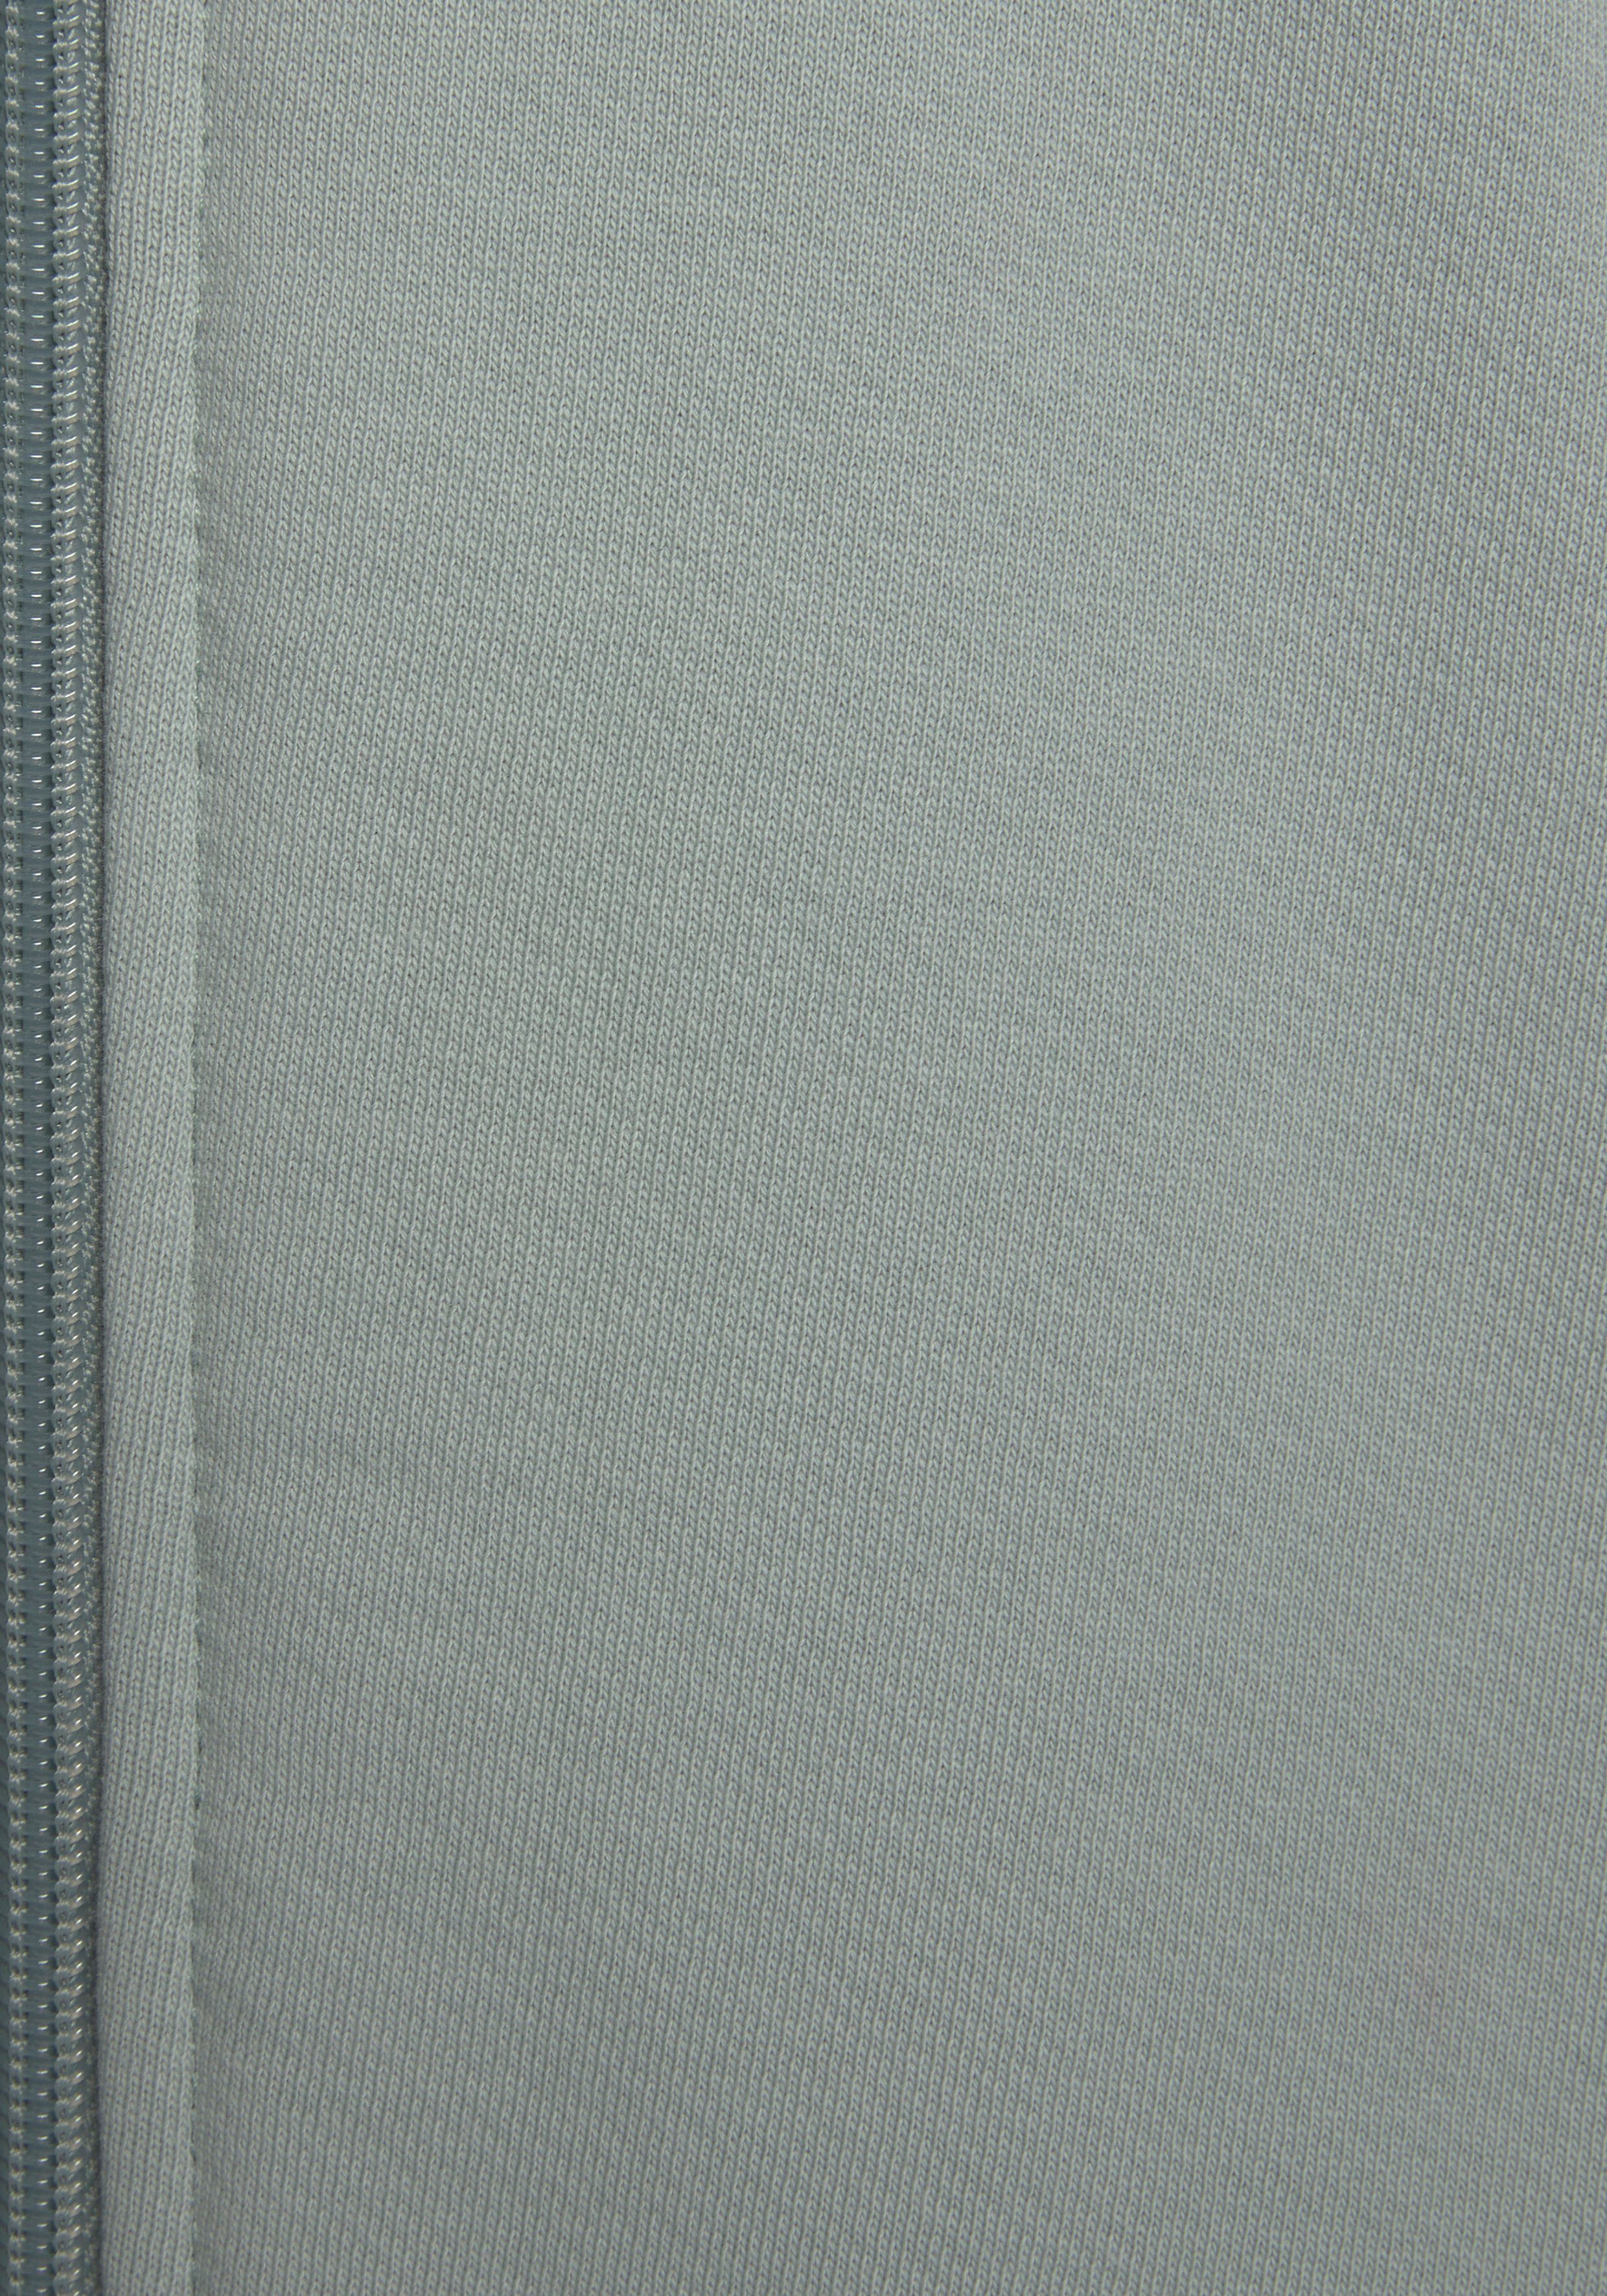 graublau aus Loungeanzug organischer LASCANA Loungewear, Sweatjacke Baumwolle,